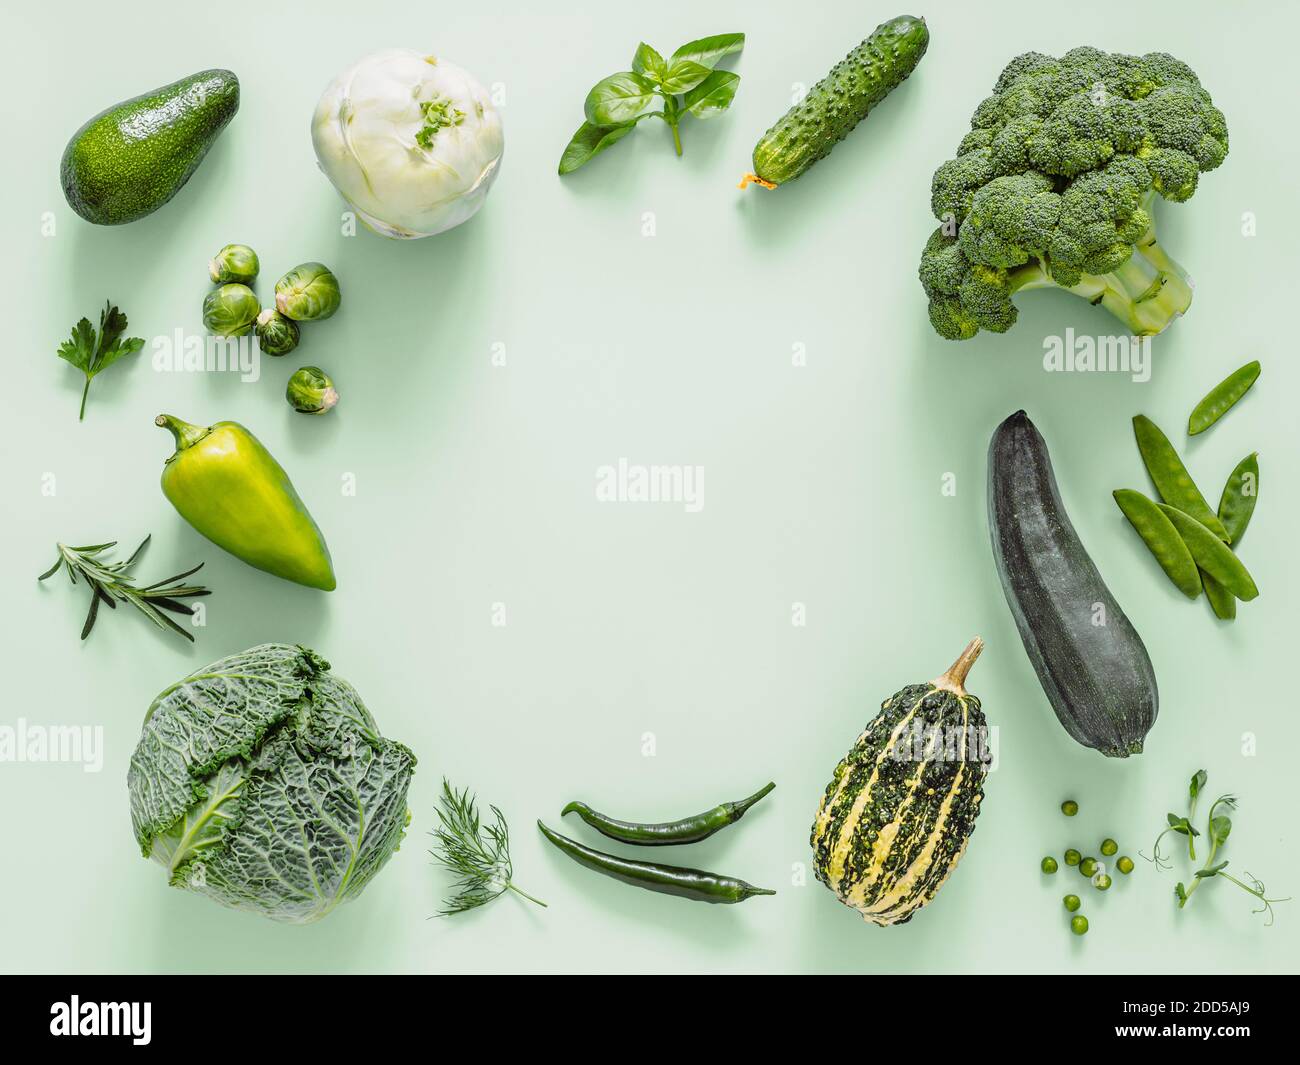 Grün monochrom flach Lay Komposition mit Gemüse, kopieren Raum in der Mitte. Gemüse - grüne Erbsen, Zucchini, Avocado, Bohnenschote, Kürbis, Brokkoli, rosenkohl, Rosmarin, Microgreens. Draufsicht Stockfoto